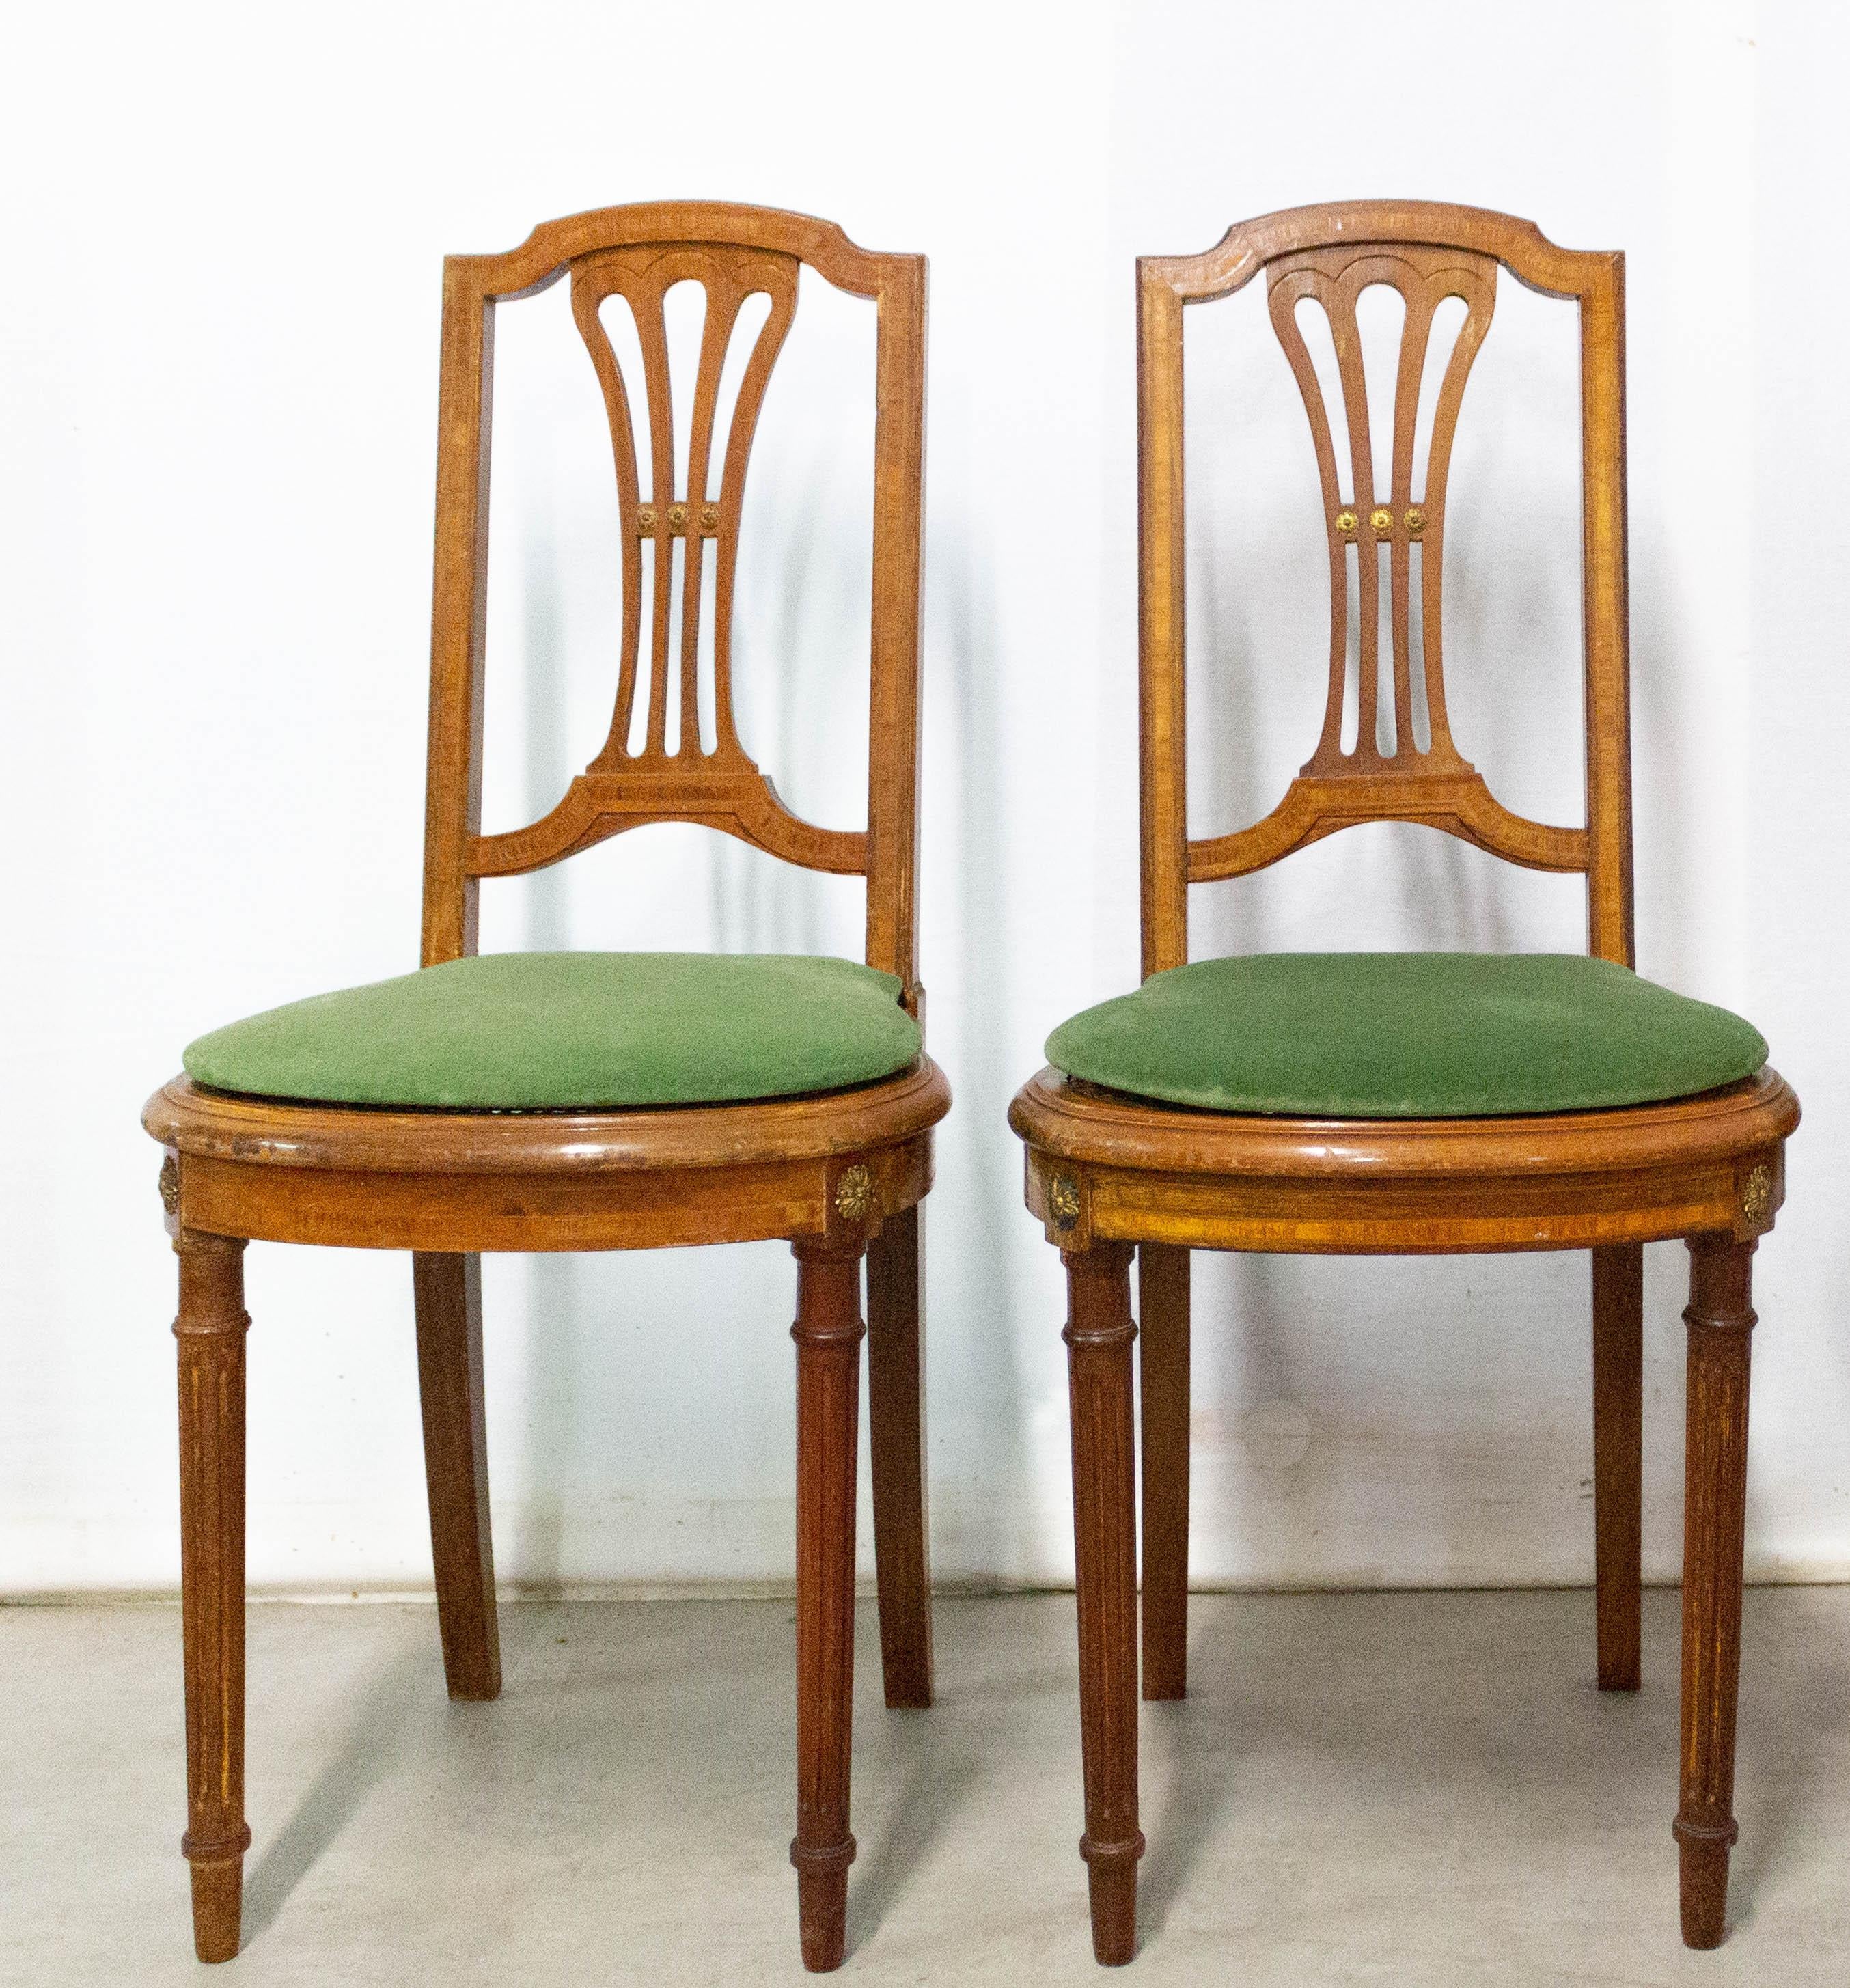 Ensemble de trois chaises de salle à manger françaises fin XIXe siècle
Les chaises sont cannées et en bois exotique.
Si vous le souhaitez, nous avons une troisième chaise qui peut être vendue avec la paire.
Le 